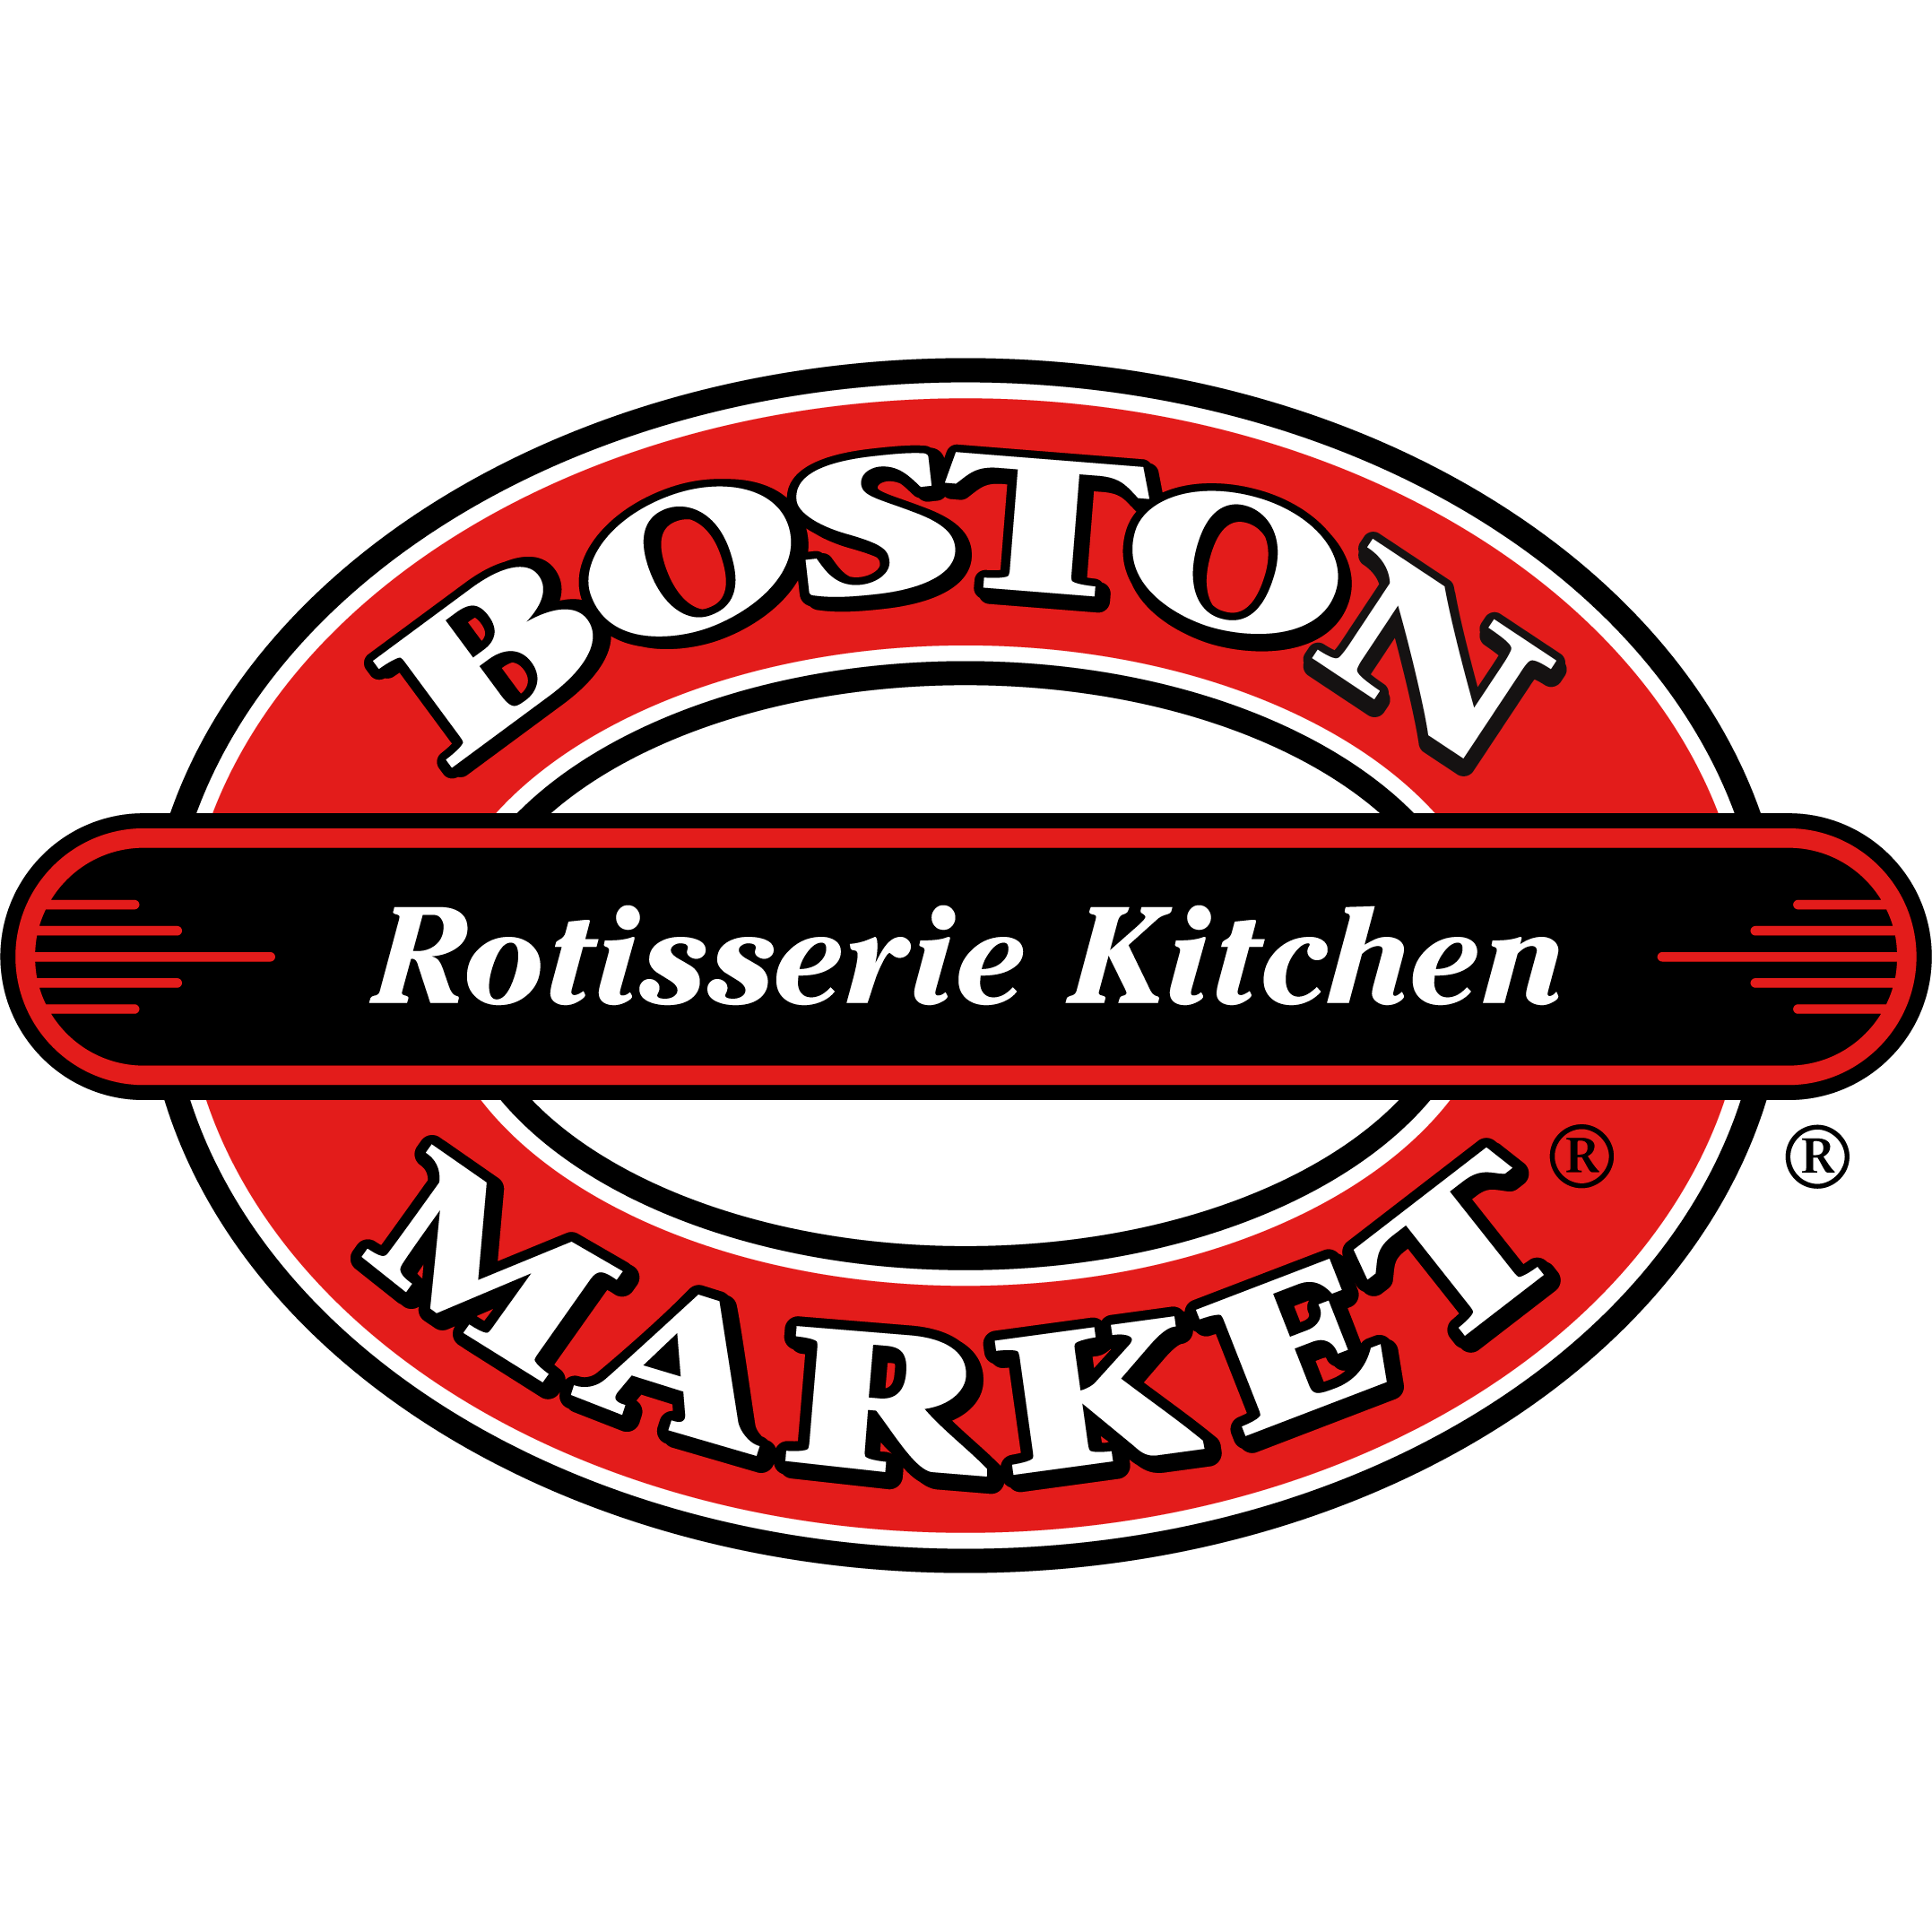 Boston Market Photo